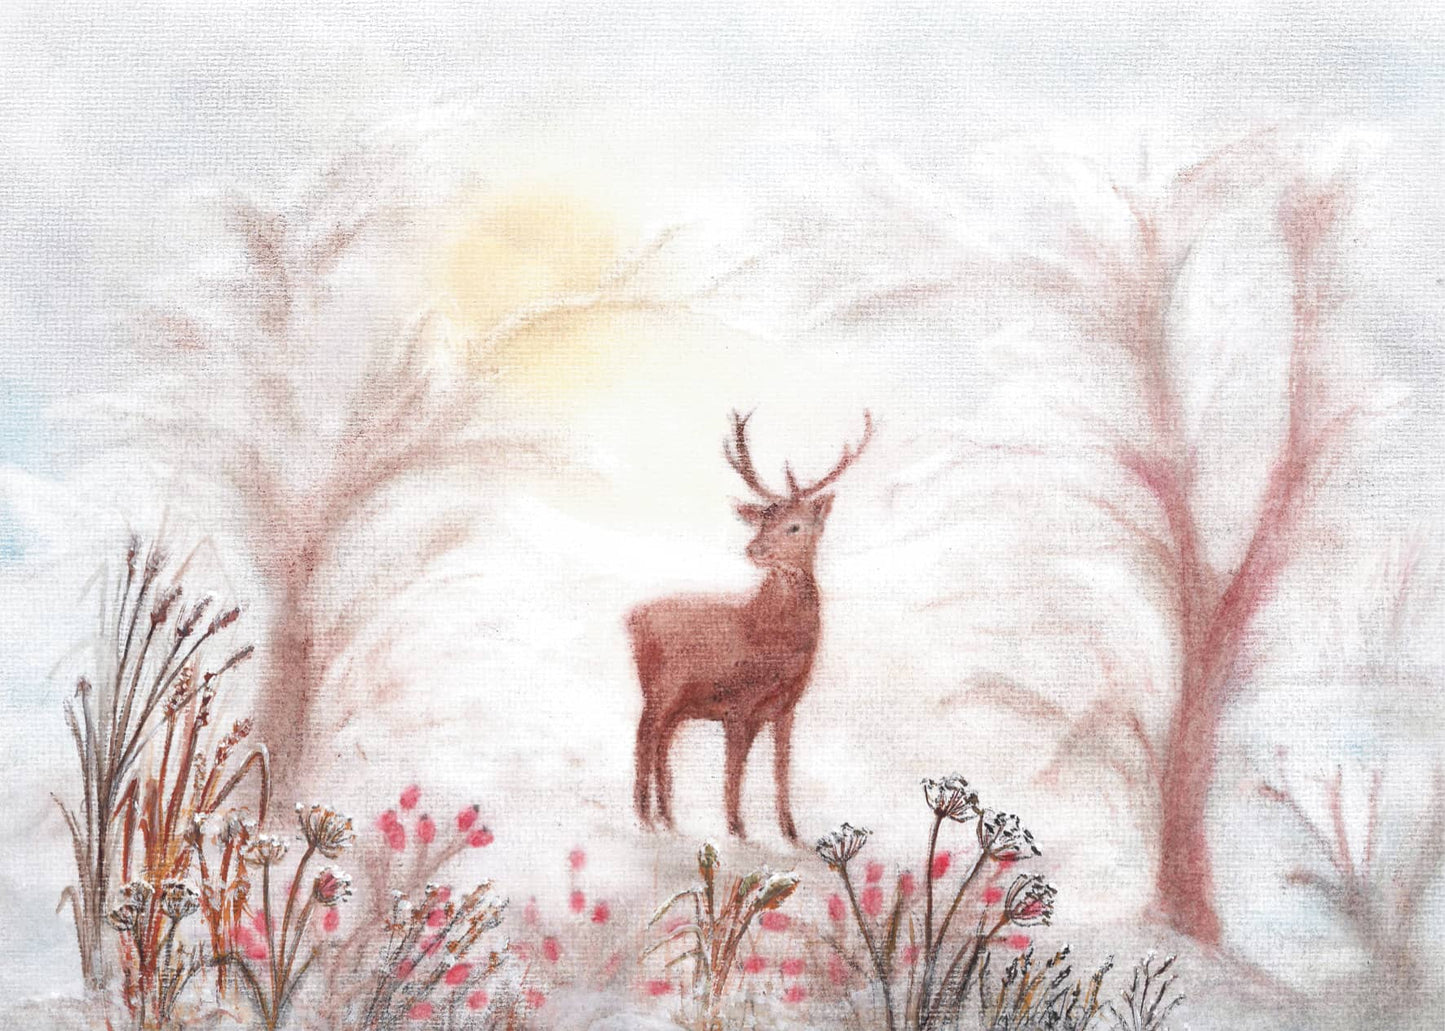 Seccorell-Postkarte "Hirsch" zeigt einen stolzen Hirsch in winterlichem Ambiente mit sanfter Morgenröte.